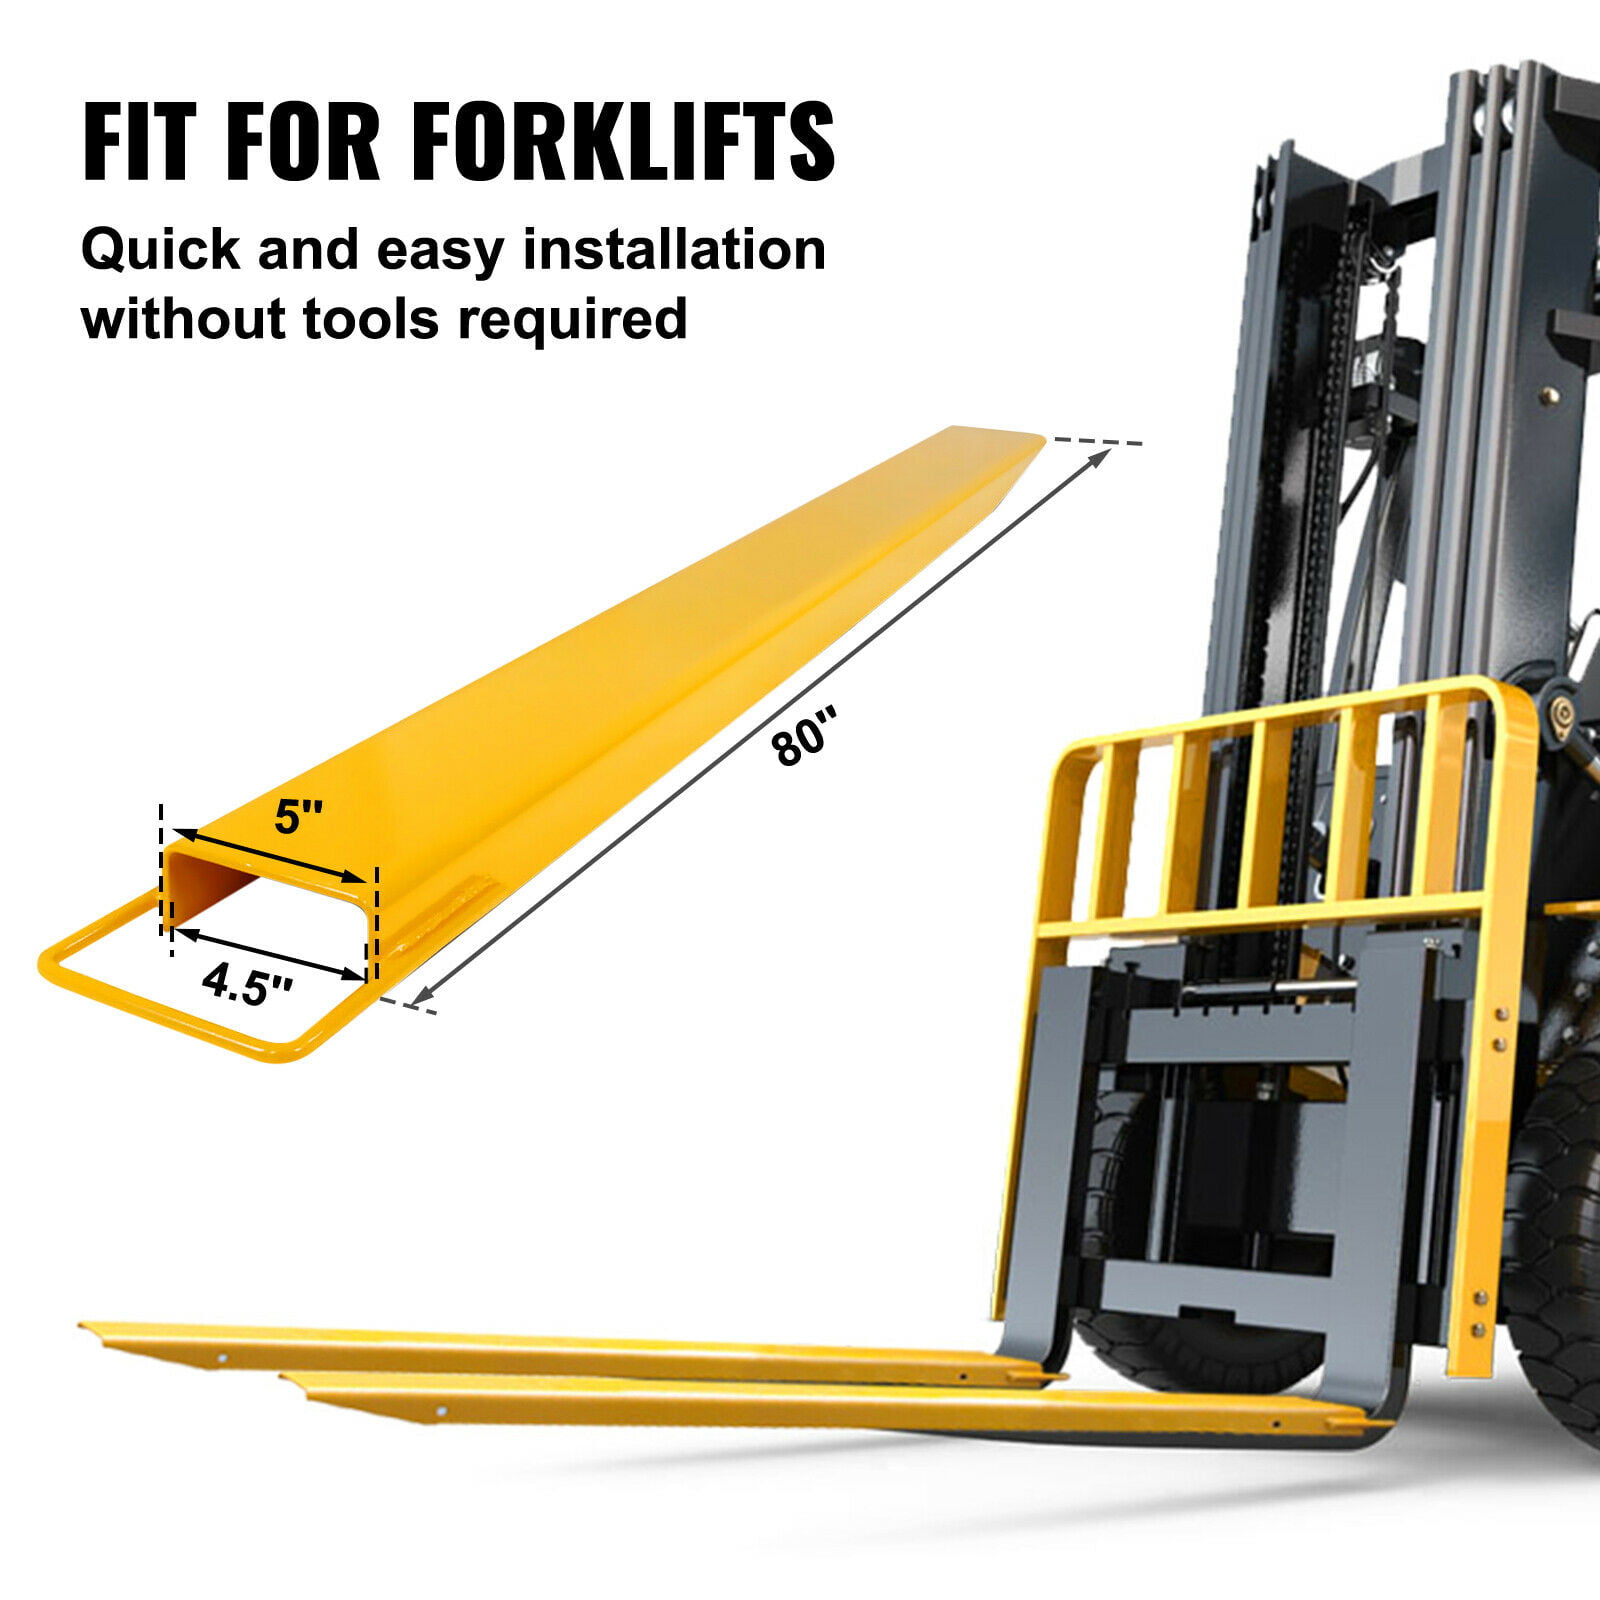 60" X 4.5" Pallet Jack Fork Extension For Forklifts Lift Truck Slide on Clamp 